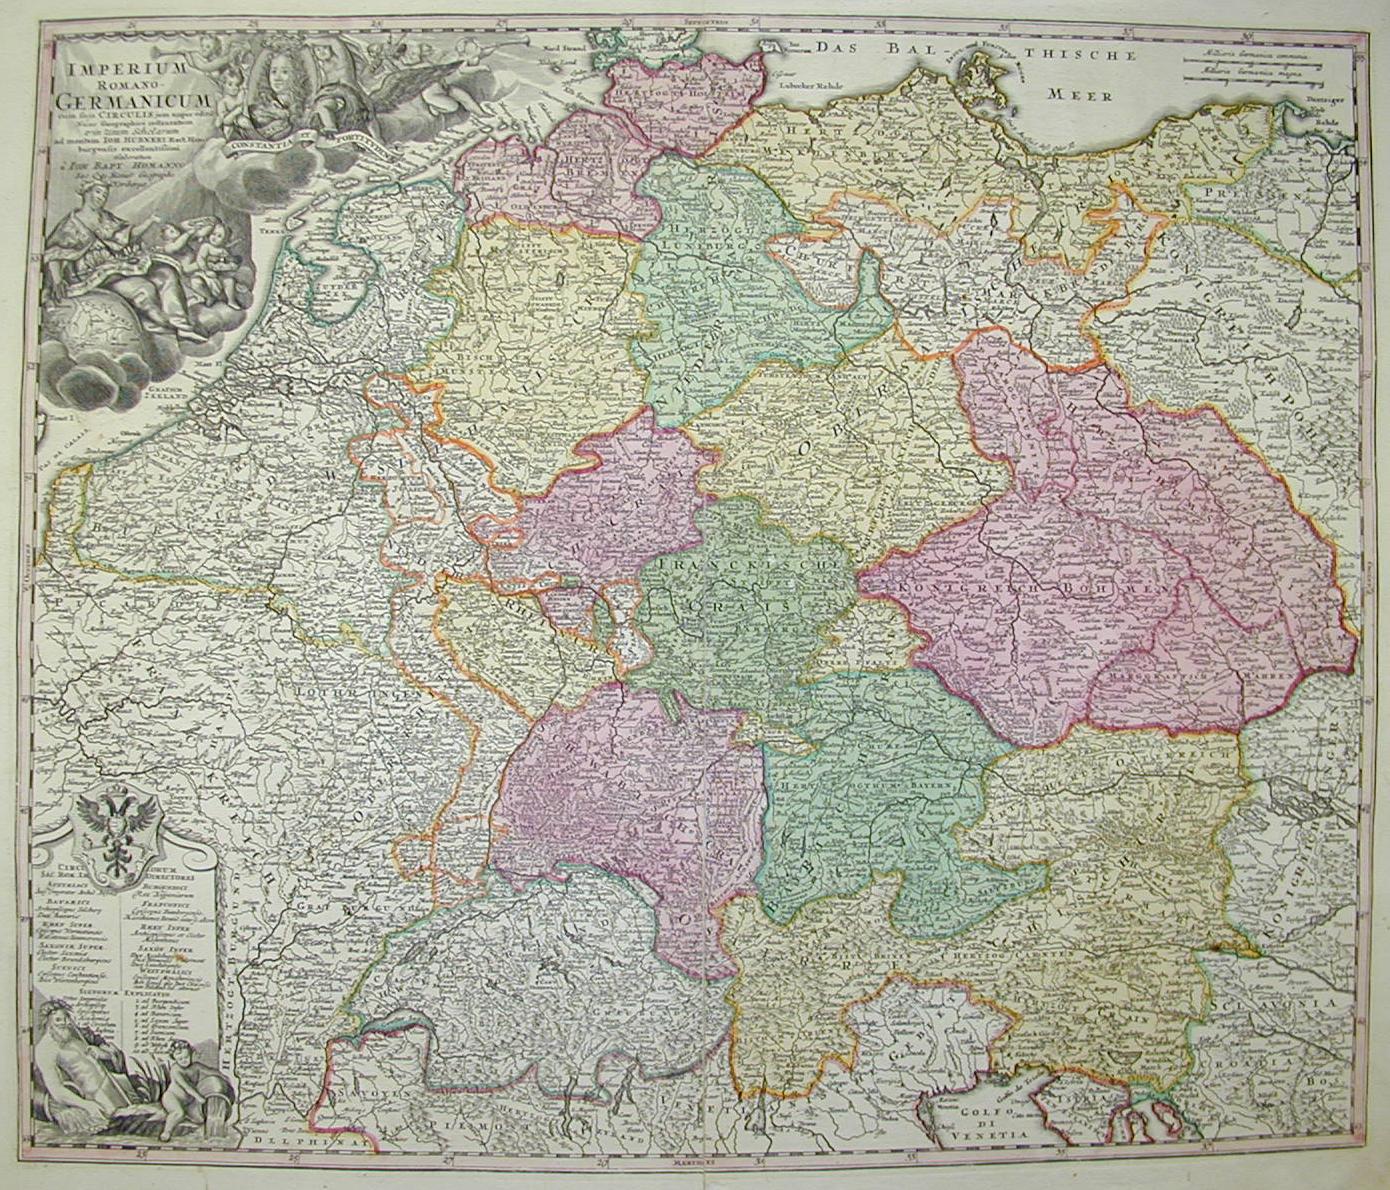 Impero Germanico (Belgio, Germania, Austria, Ungheria) 1750 ca.